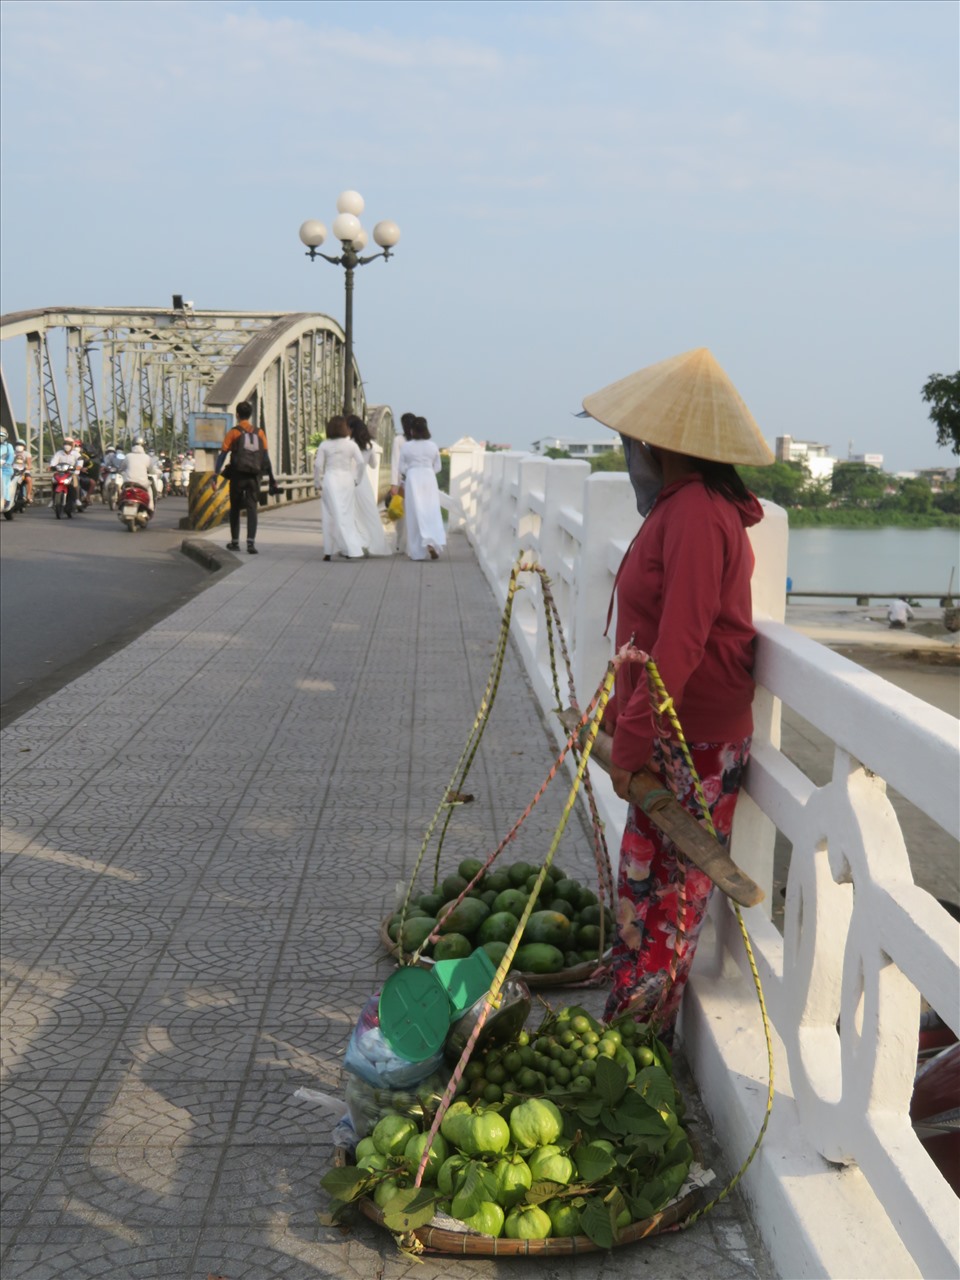 Những người phụ nữ từ Hà Nội vào Huế nhân dịp lễ 30.4- mùng 1.5, mang theo bó hoa loa kèn làm “đạo cụ” - chụp ảnh trên cầu Tràng Tiền và những người đàn bà Huế tần tảo hàng rong.